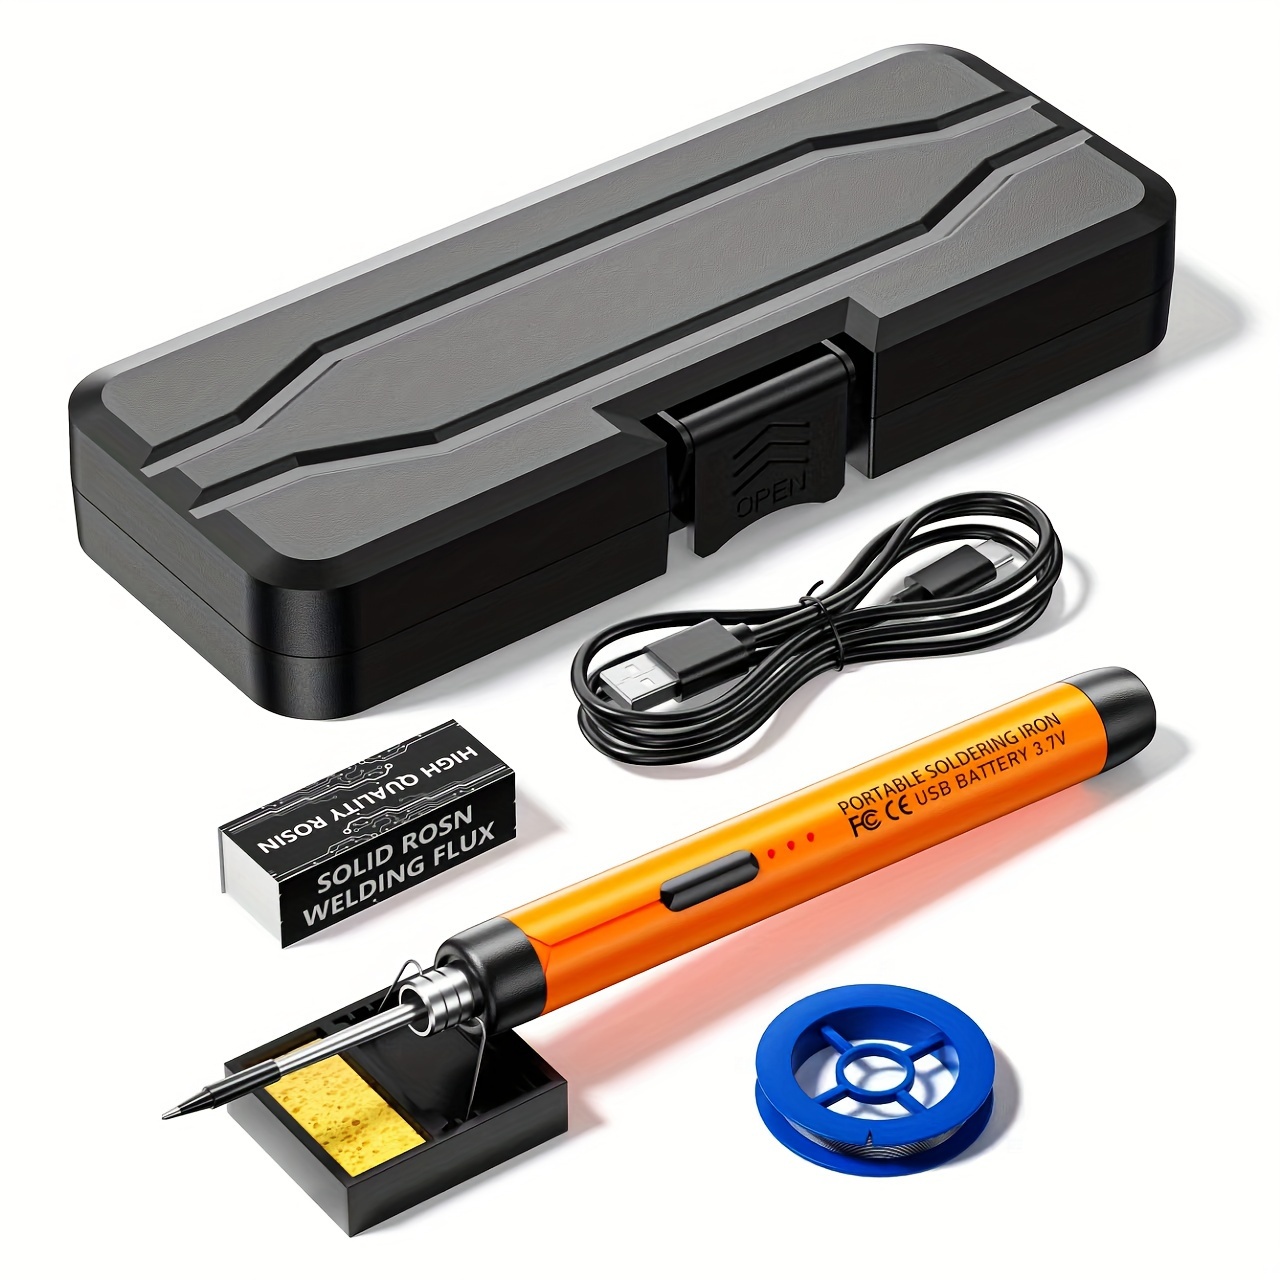 

Usb Soldering Iron, Mini Convenient Adjustable Temperature Home Tools Diy Manual Radio Soldering Iron Set